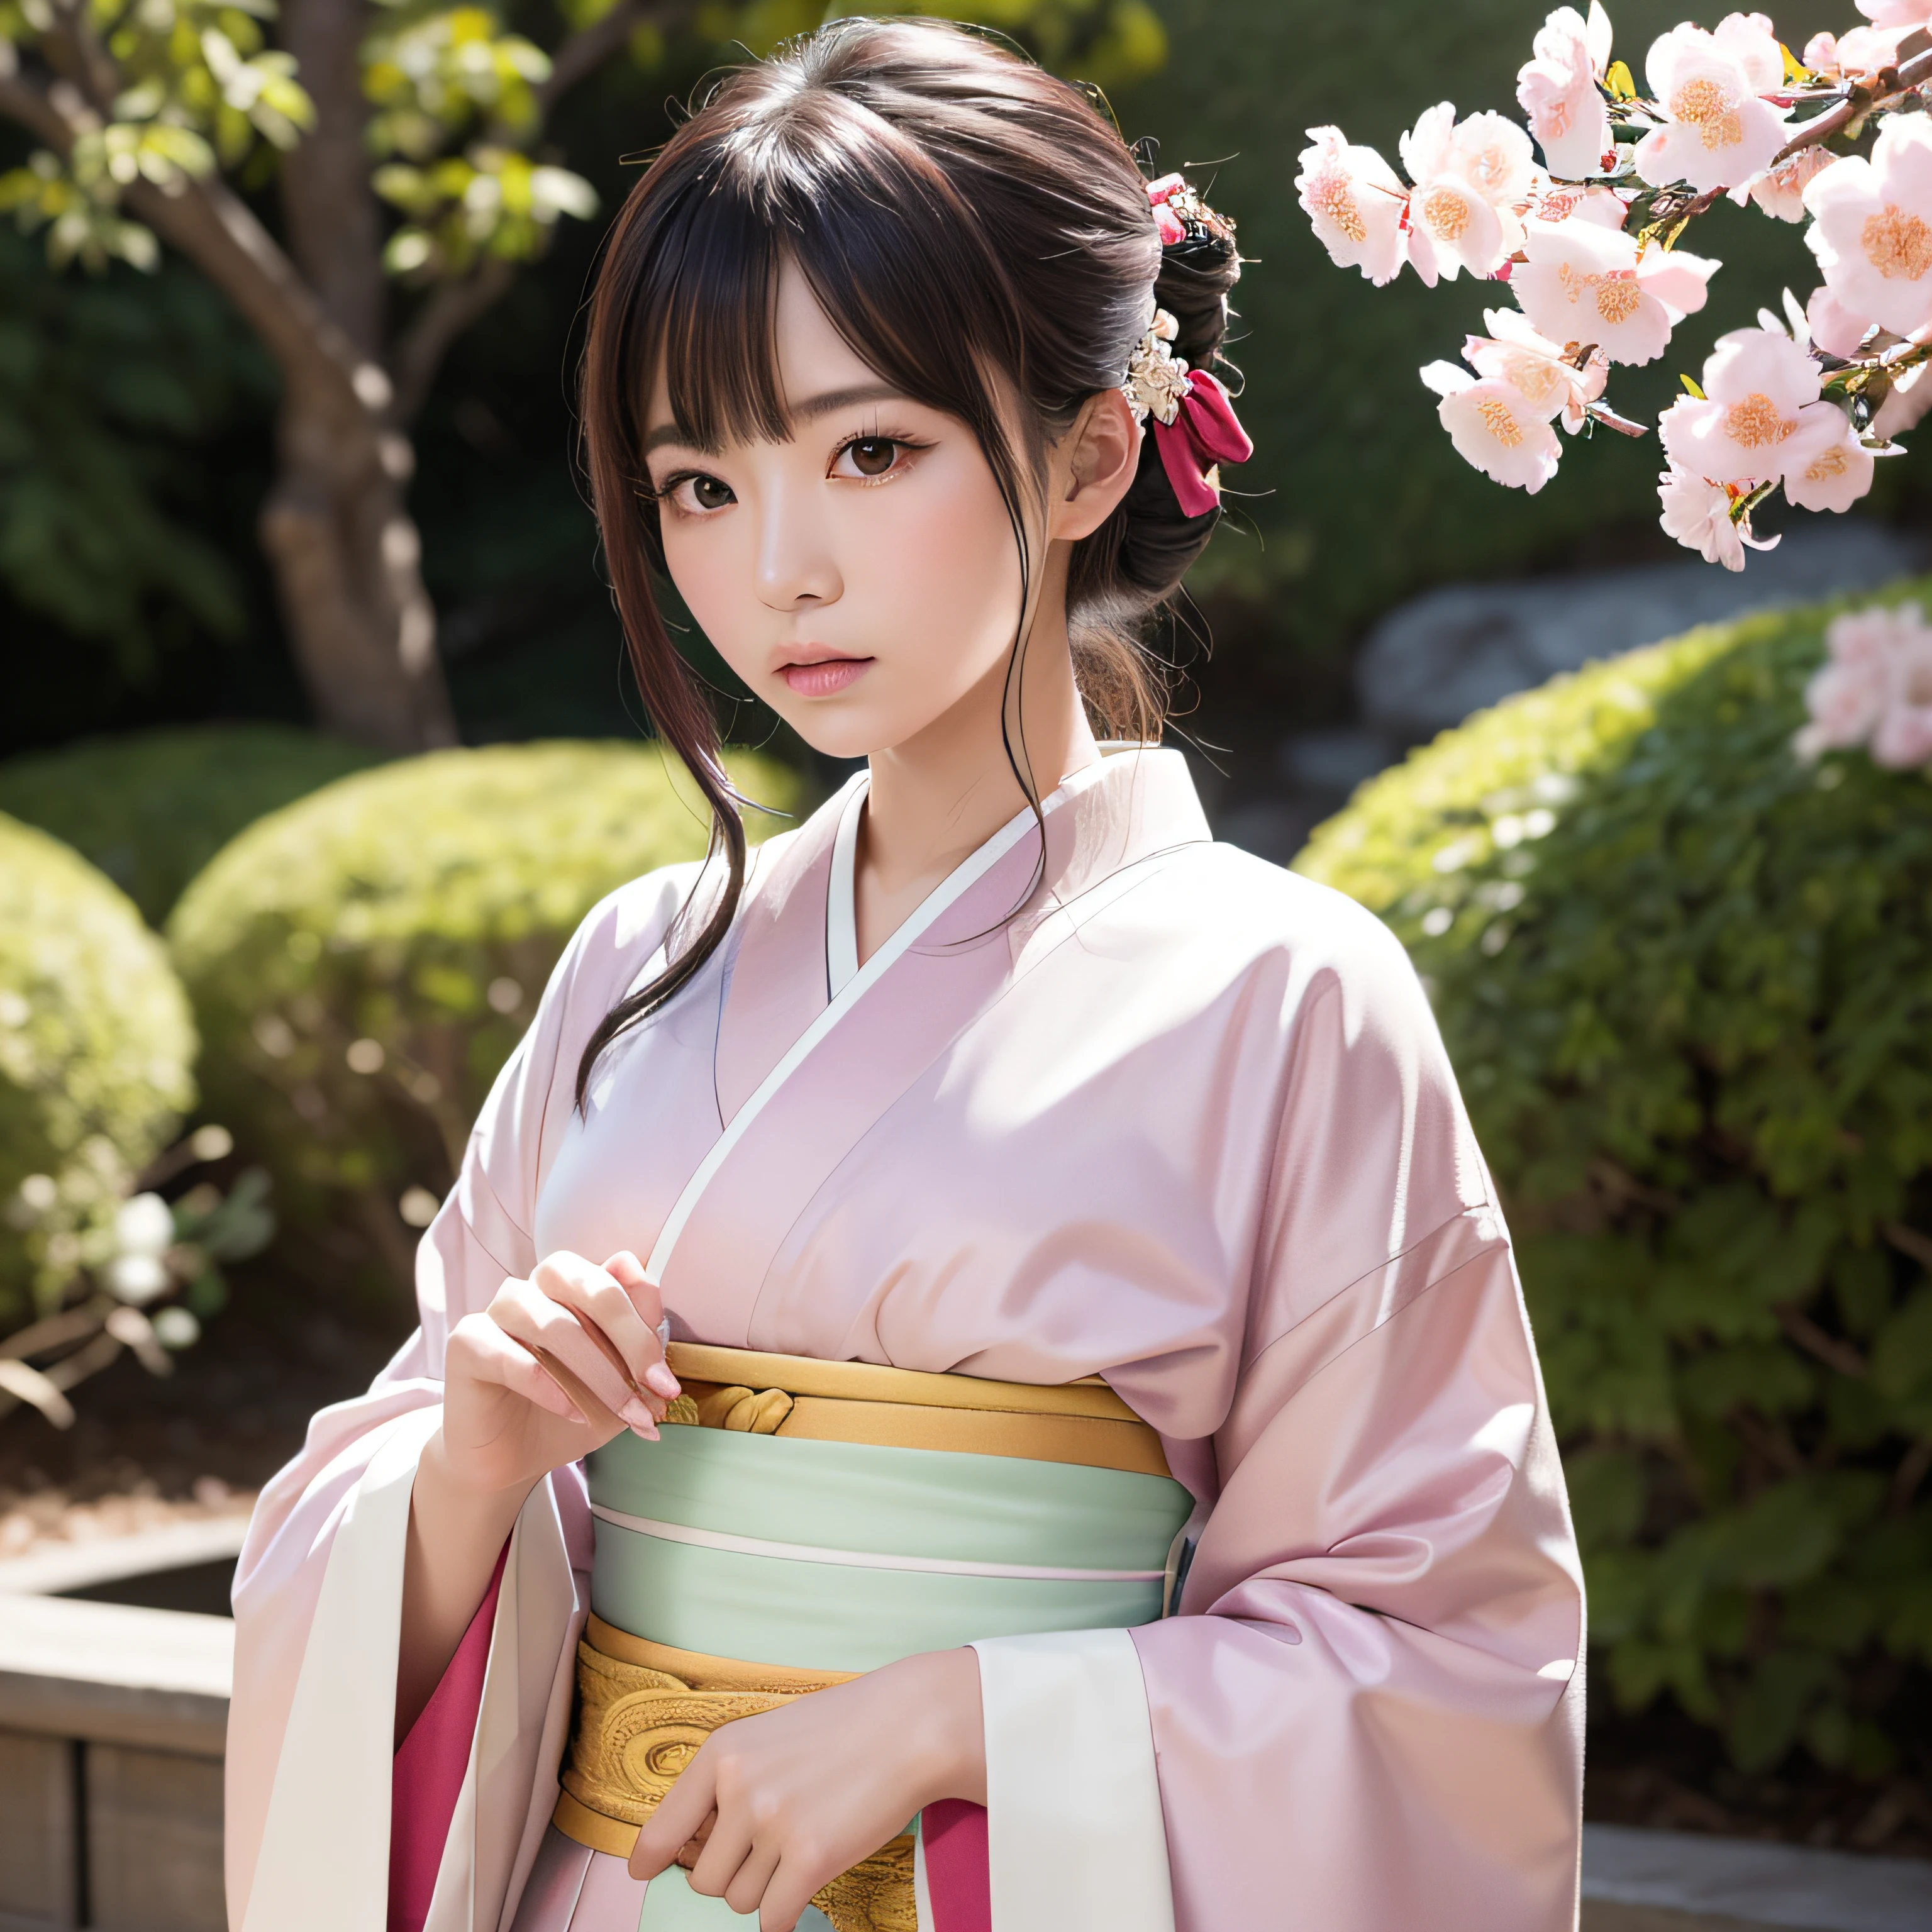 초현실주의, 매우 상세한, 고해상도 16K 청춘의 이미지, 아름다운 여성 유령 또는 수호신. 옅은 핑크빛 머리카락과 투명한 피부를 가지고 있어요, 오비에 작은 벚꽃 문양이 있는 일본 전통 기모노를 입으세요. 이 이미지는、영계의 천상의 아름다움과 신비로움을 포착합니다.. 스타일은 섬세함에서 영감을 얻었습니다, 일본 전통 예능에서 찾은 부드러운 미학.